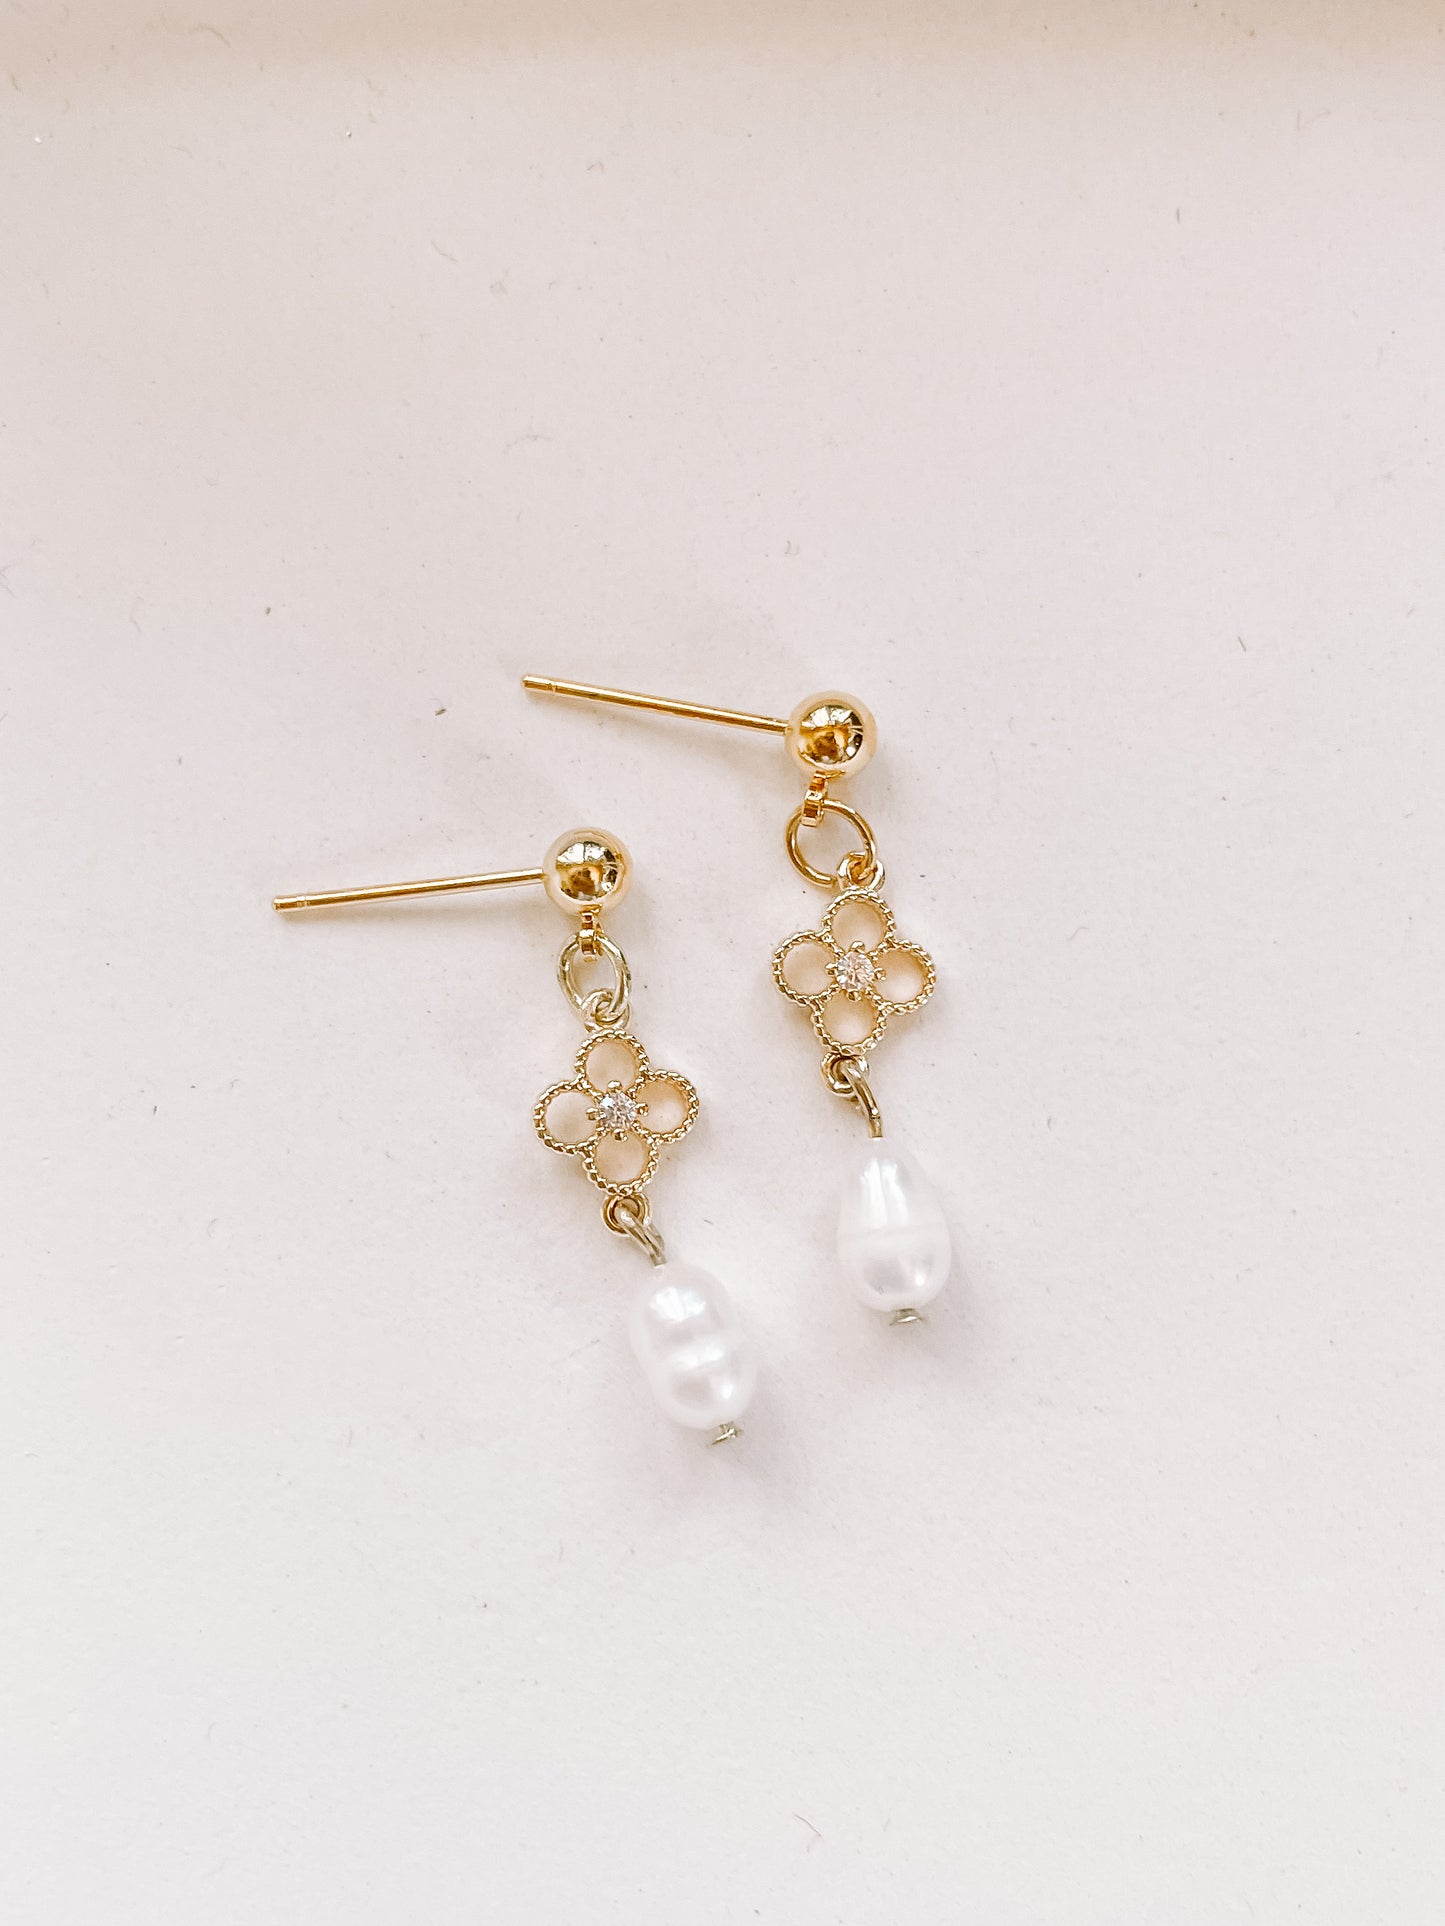 Dainty clover earrings